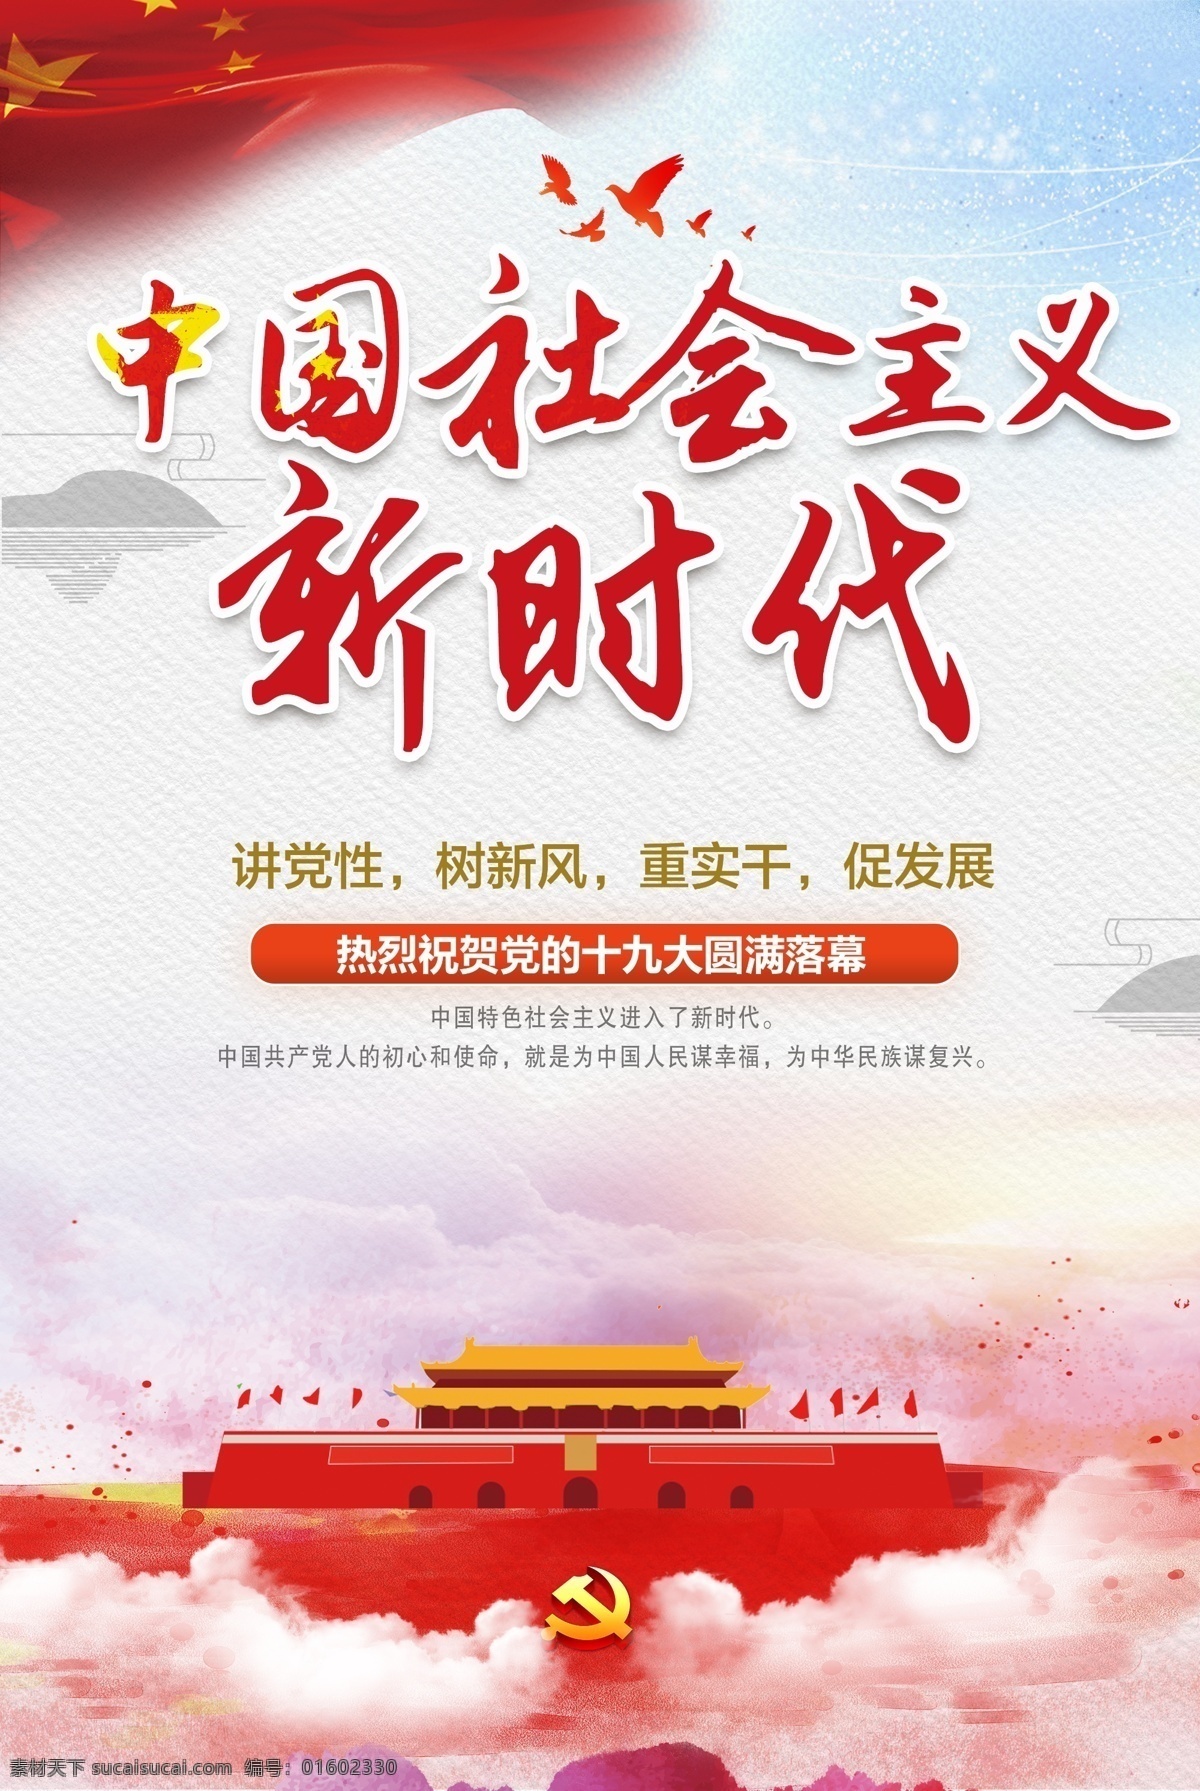 十 九大 红色 文化 中国 社会主义 红色背景 创意 清新 公益海报 公益广告 十九大 党的建设 红色文化背景 加强作风建设 水彩 捐款